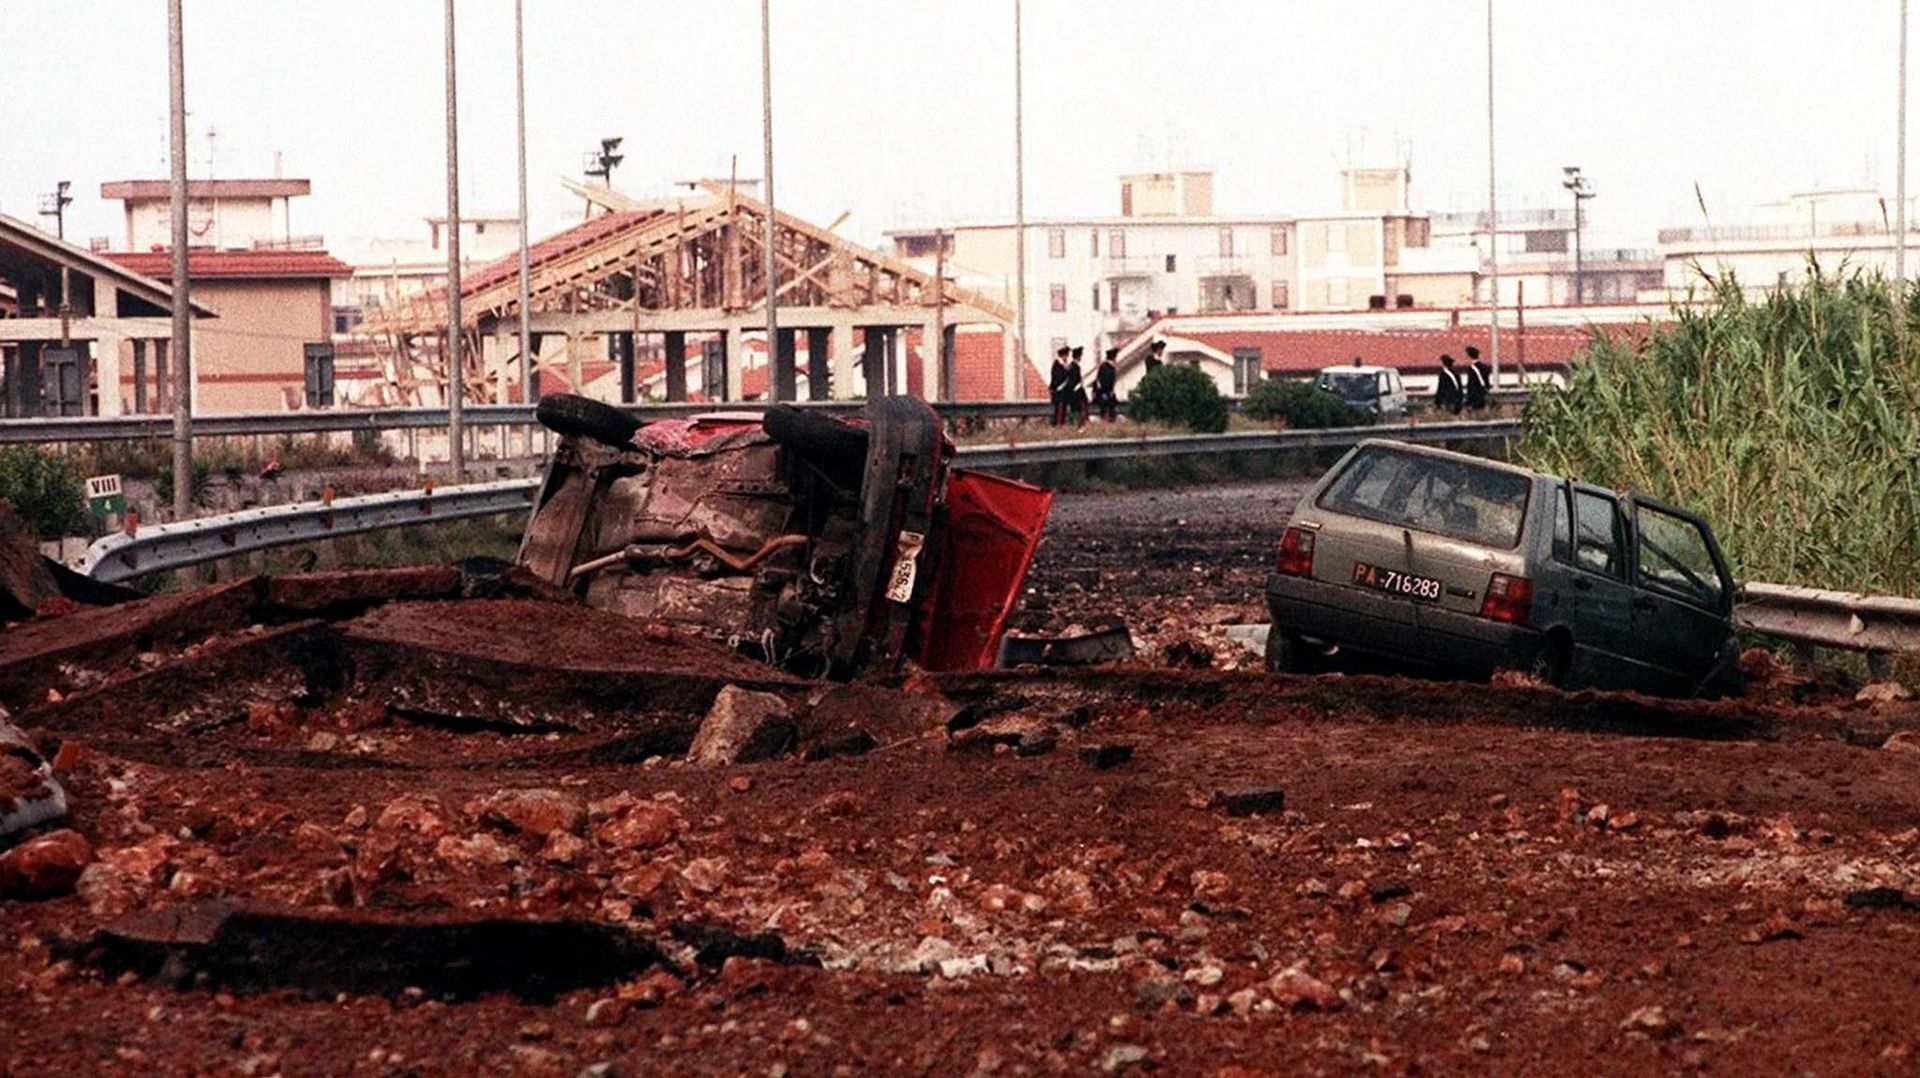  23 May 1992 shows the site where Italian Anti-Mafia judge Giovanni Falcone, his wife Francesca Morvillo and tree body-guards were killed in a bomb explosion